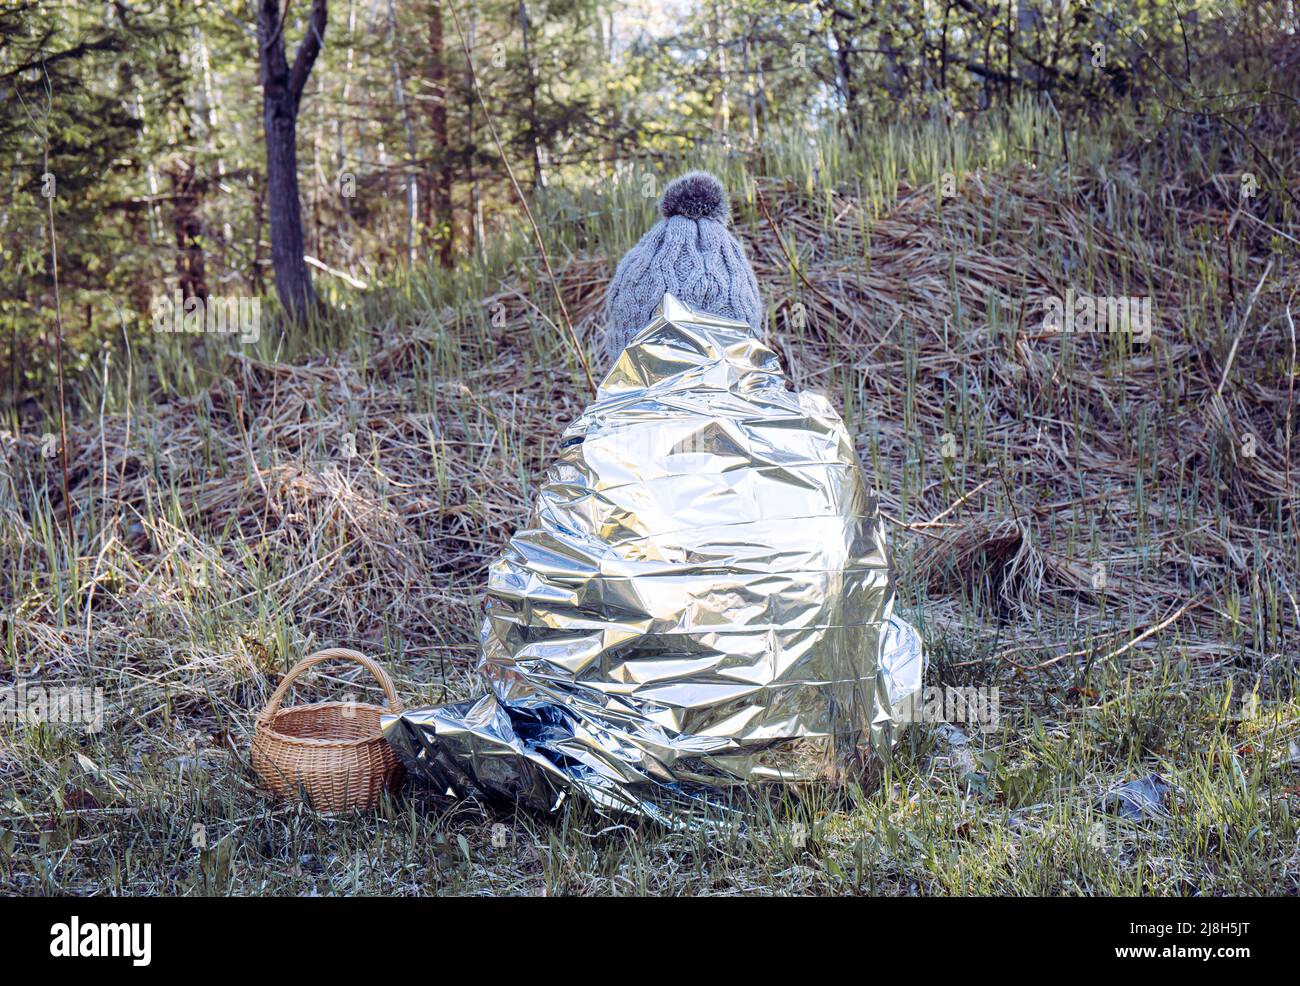 Donna persona è perso e si siede nella foresta selvaggia in giorno freddo, usando coperta di emergenza di primo soccorso per prevenire ipotermia e perdita di calore del corpo. Foto Stock